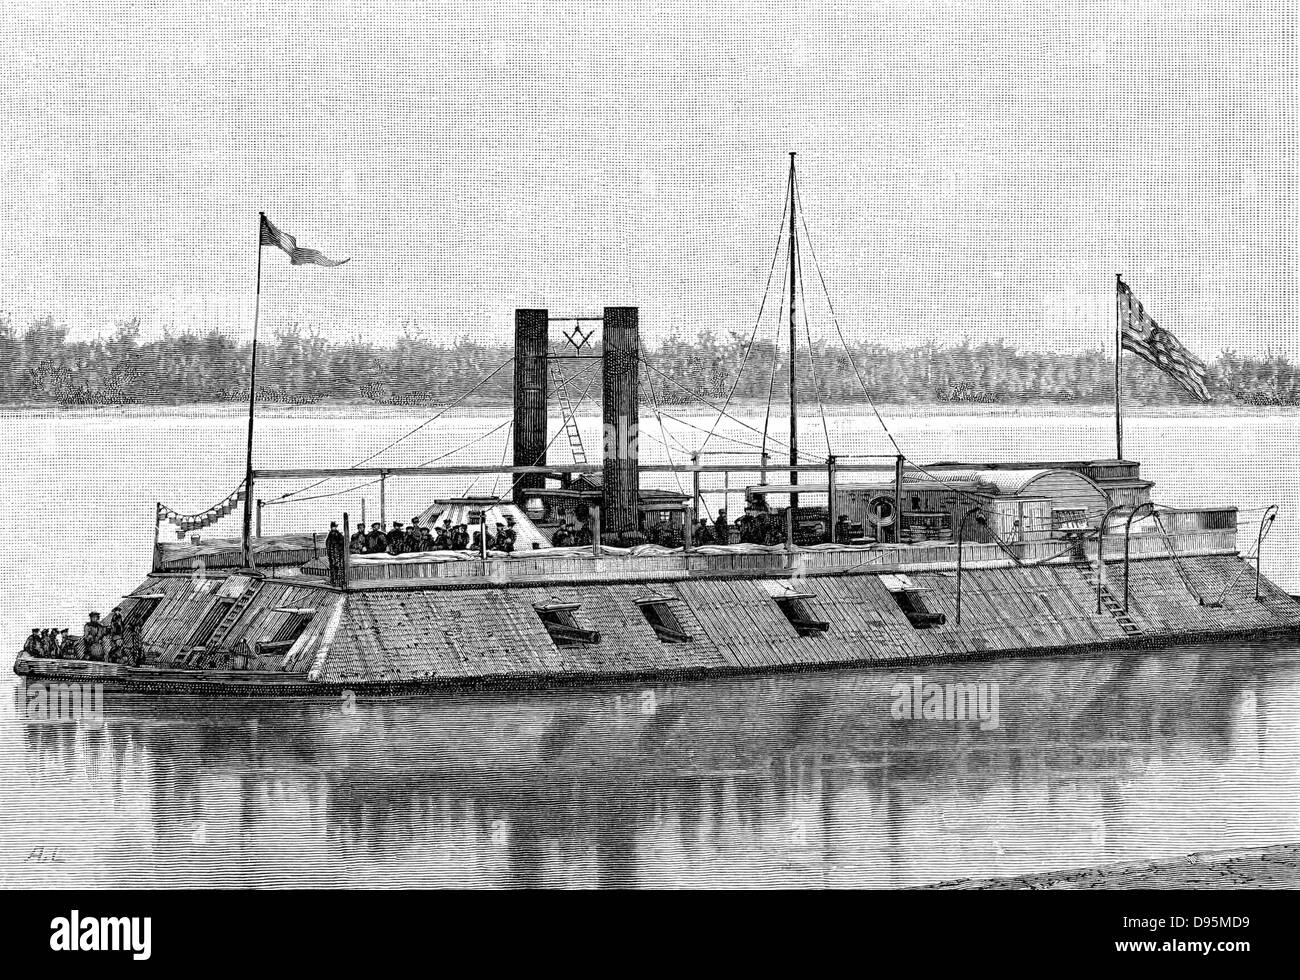 St Louis', James Buchanan Eads frühesten gepanzerte Kanonenboot durch Unionistische (nördlichen) Seite beschäftigt in der Amerikanische Bürgerkrieg 1861-1865. Von 1863 Torpedo versenkt. Gravur. Stockfoto